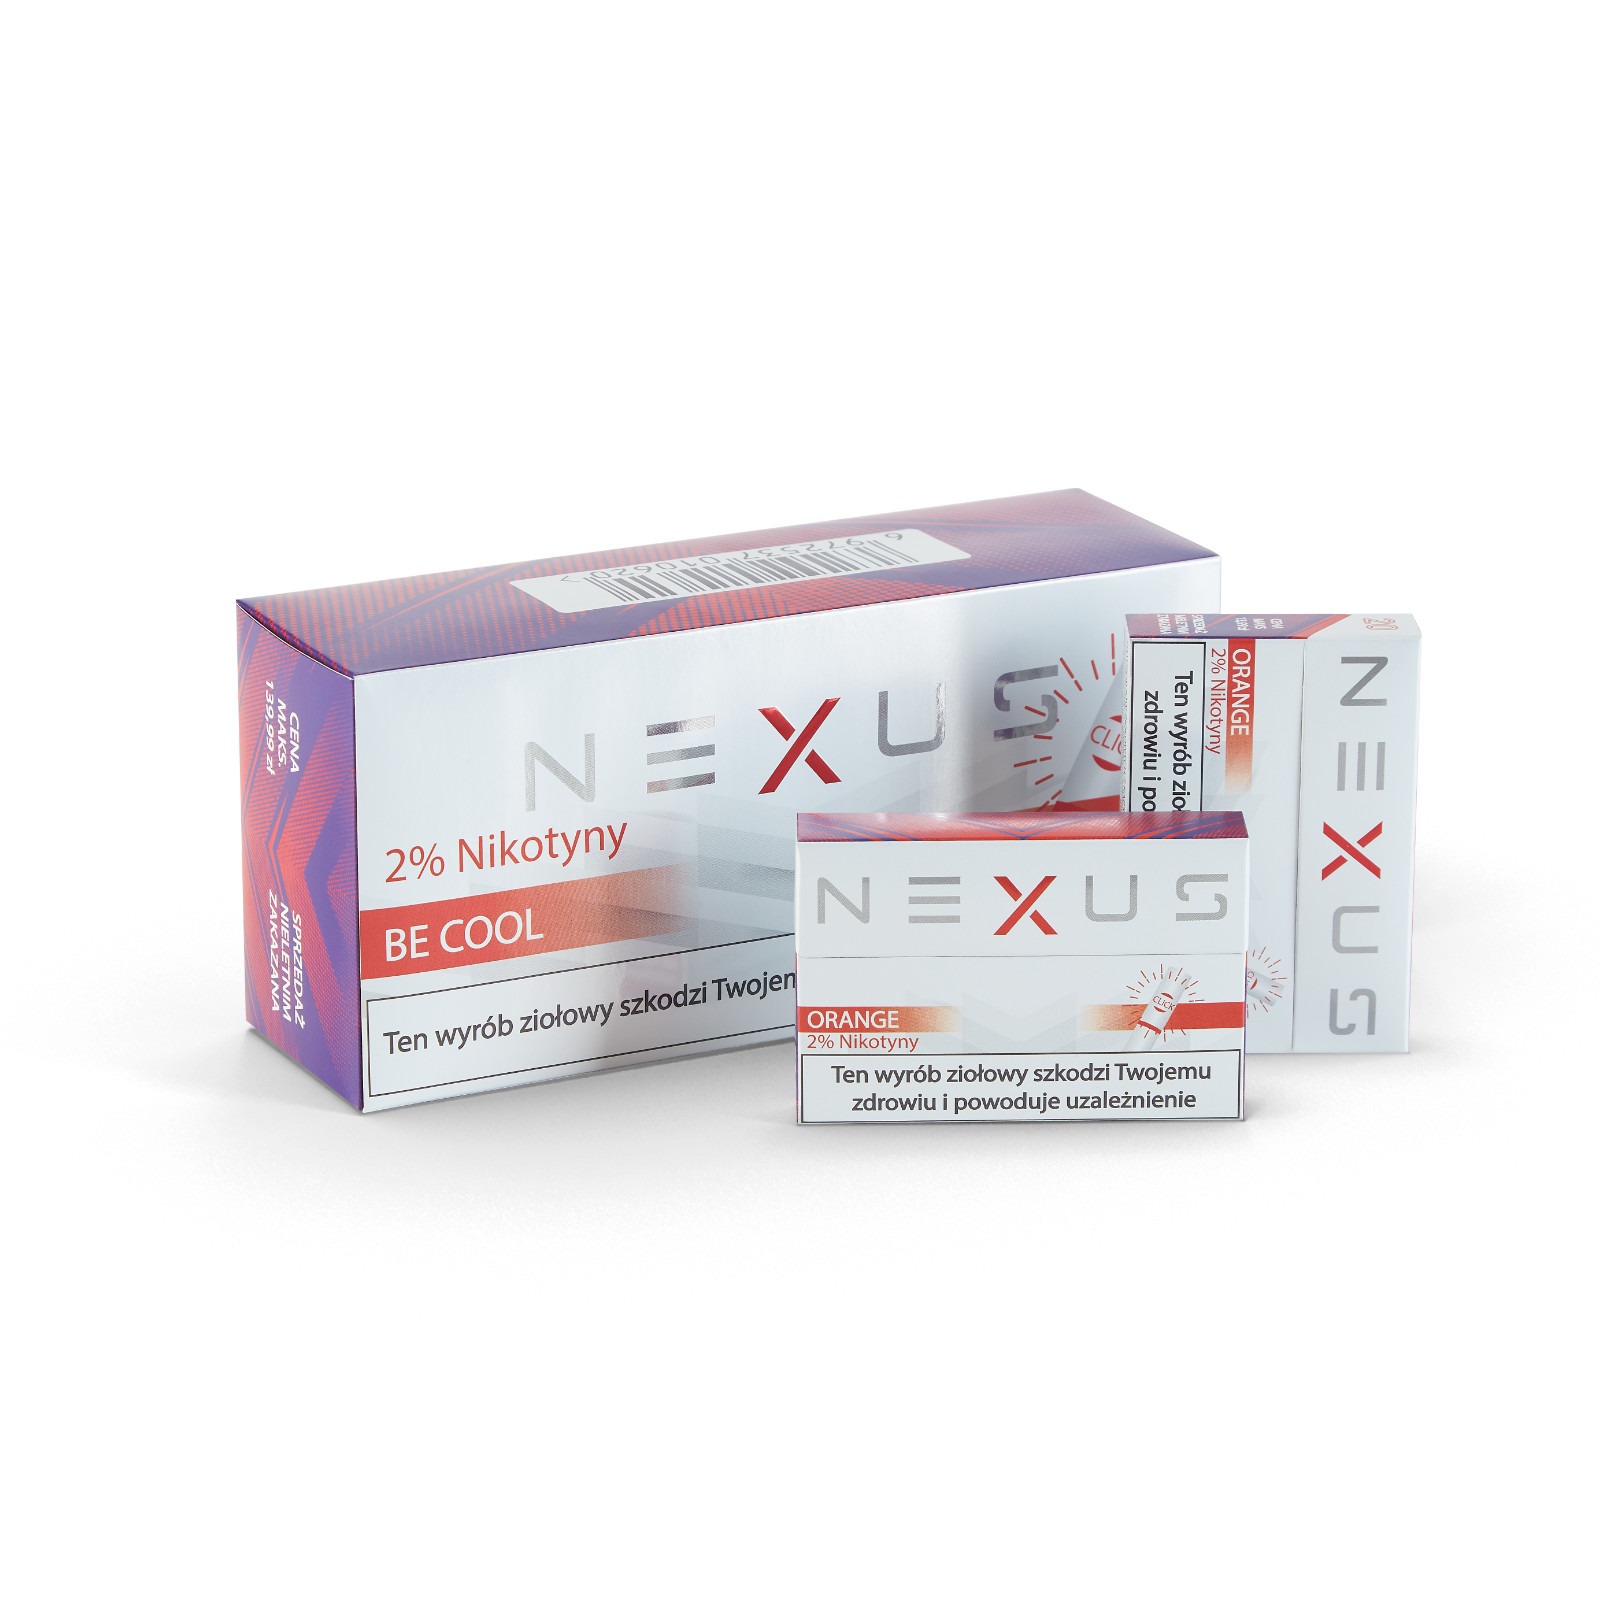 Z jakich powodów wkłady NEXUS są lepsze od wkładów tytoniowych?